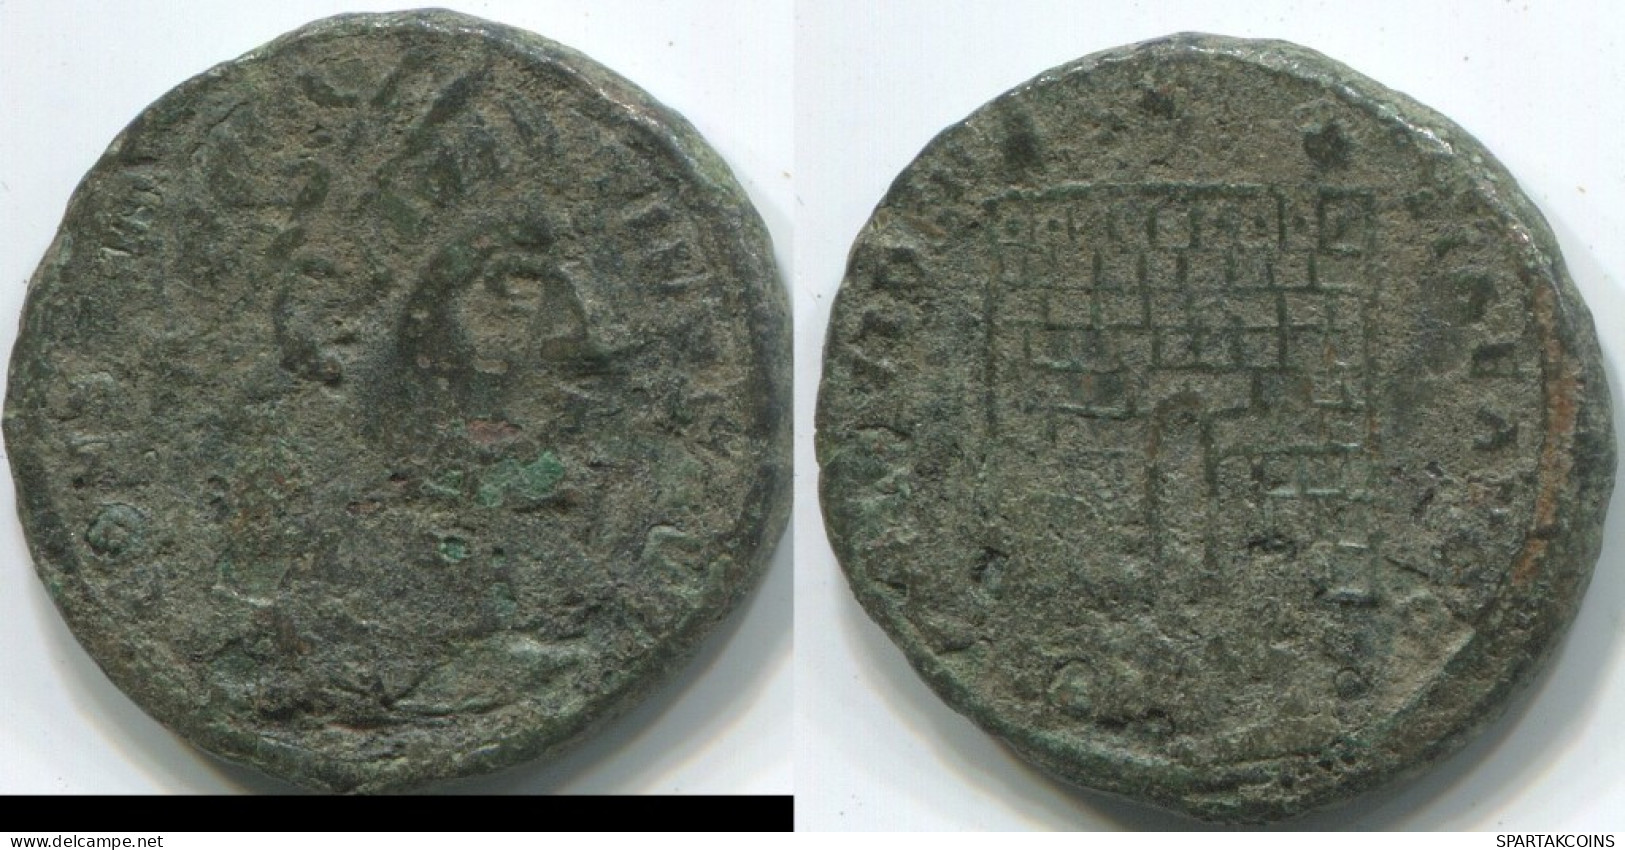 LATE ROMAN EMPIRE Follis Ancient Authentic Roman Coin 3g/18mm #ANT2117.7.U.A - Der Spätrömanischen Reich (363 / 476)